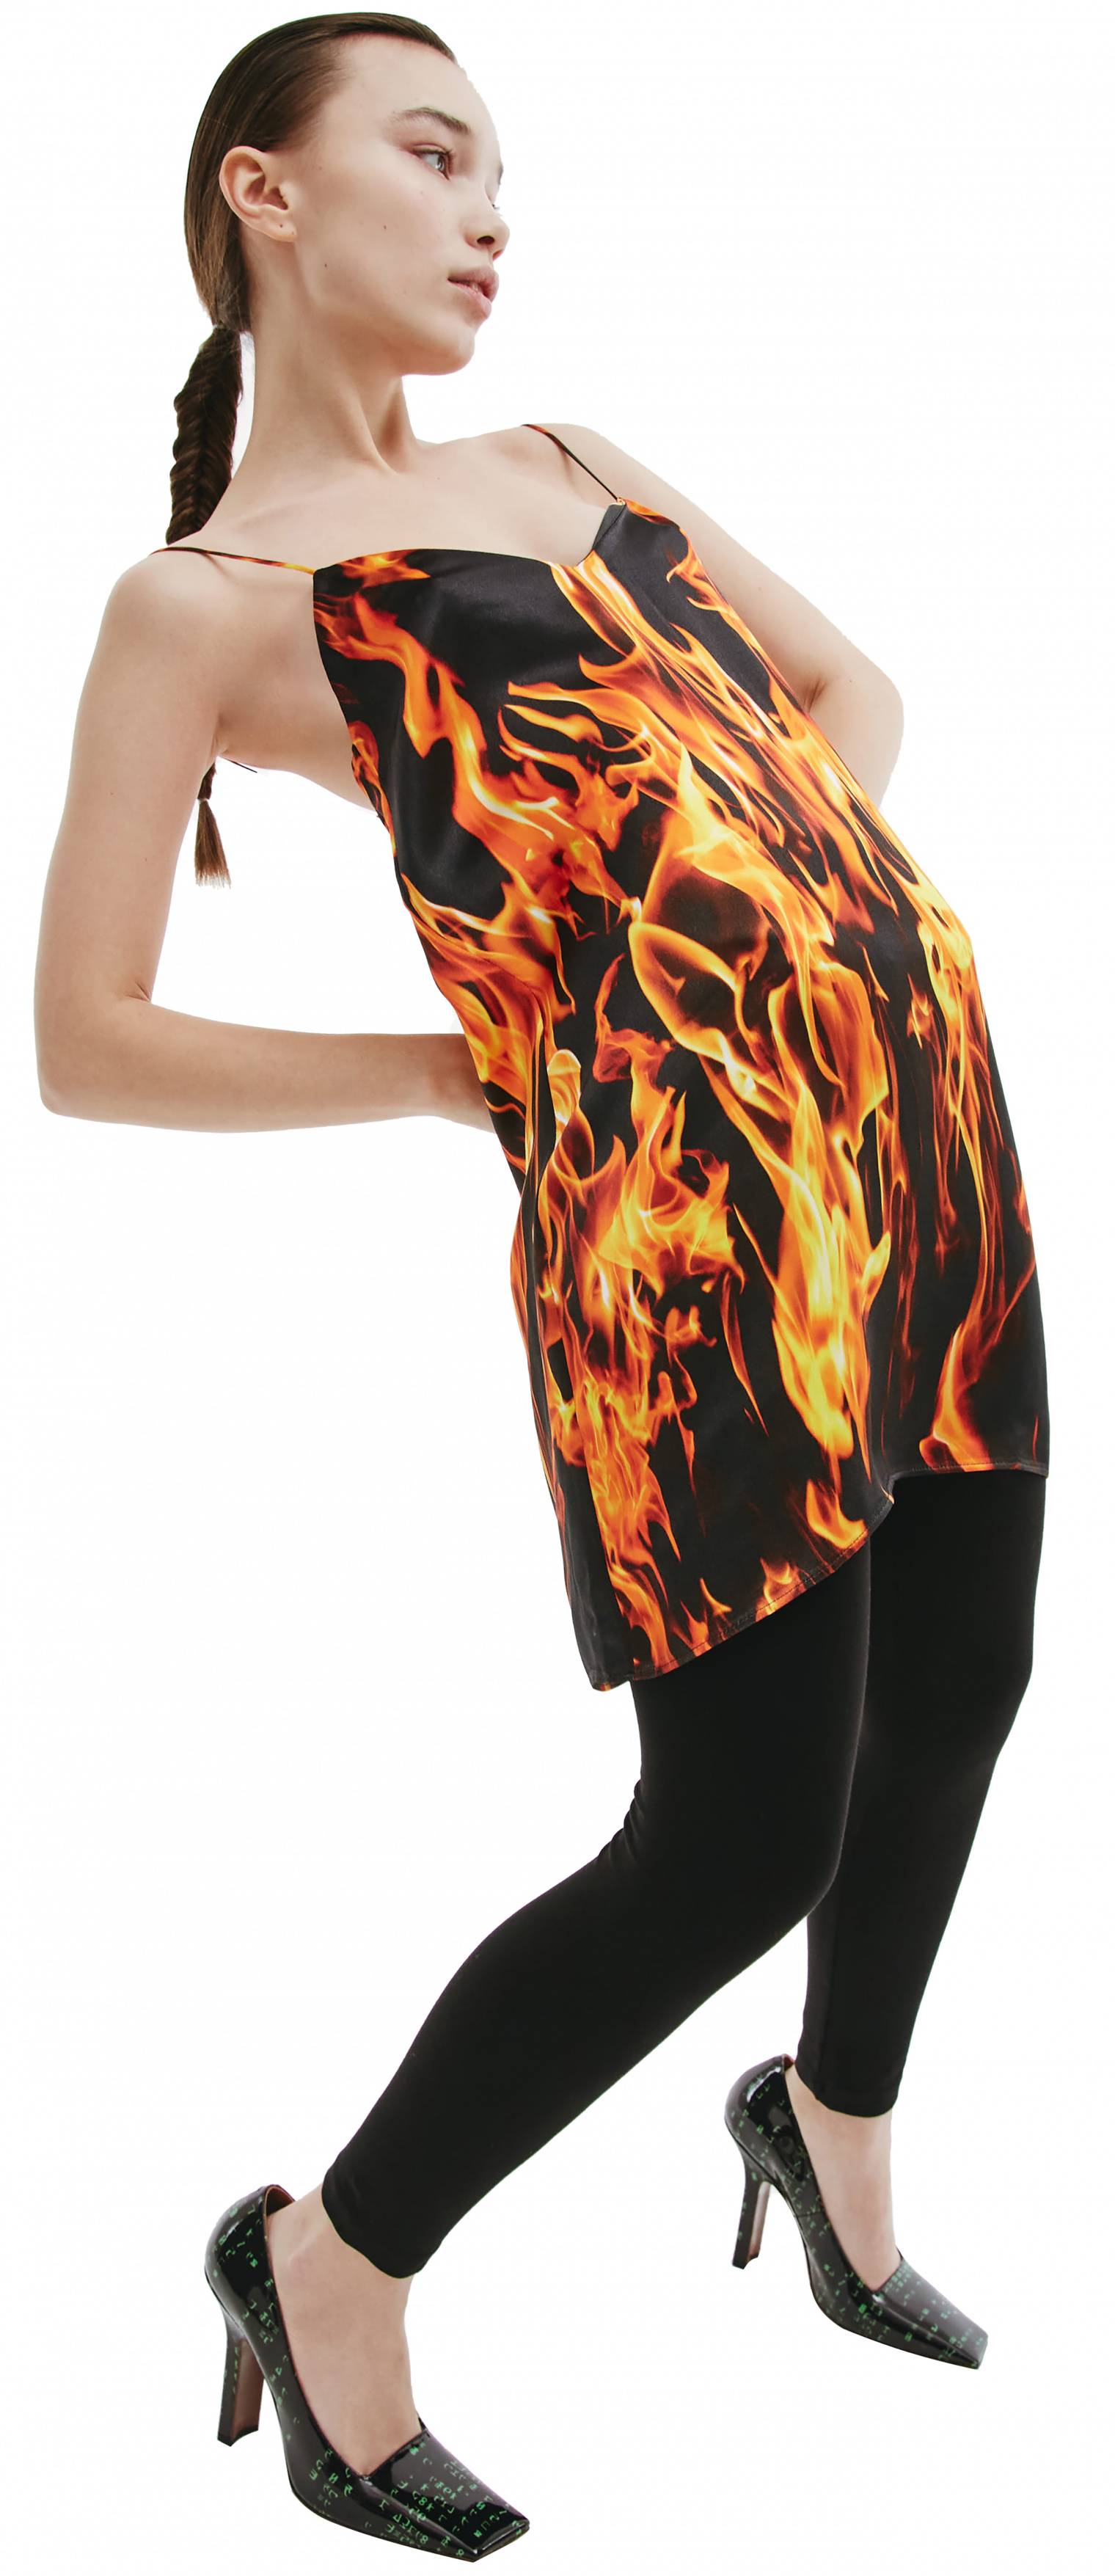 VETEMENTS Платье-комбинация с пламенем